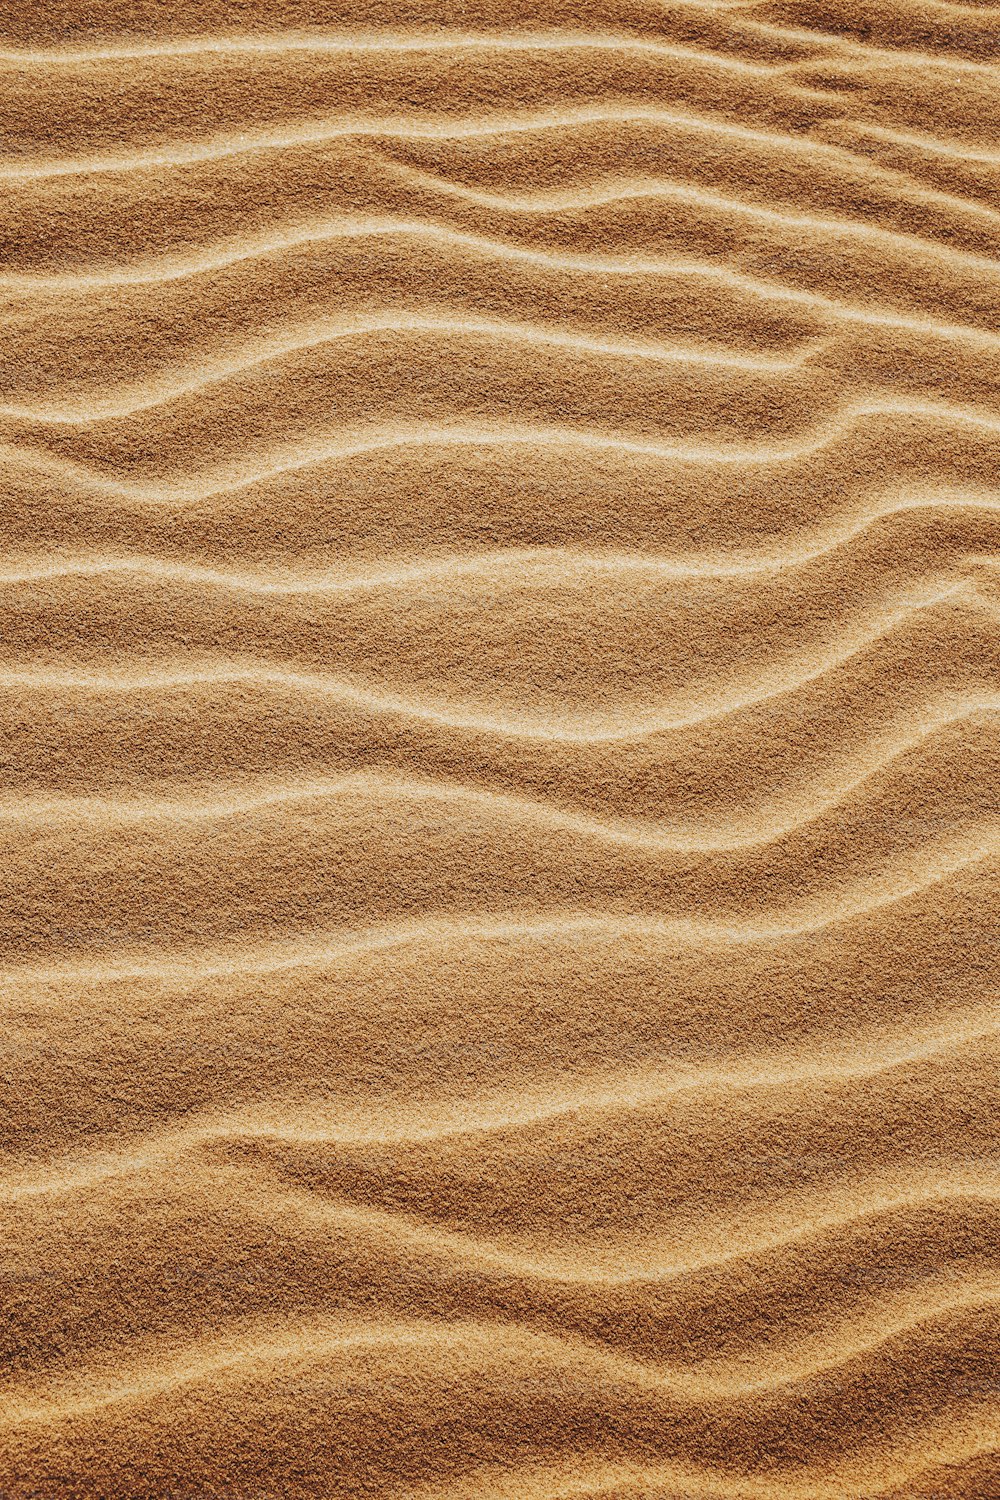 una duna di sabbia con linee ondulate nella sabbia